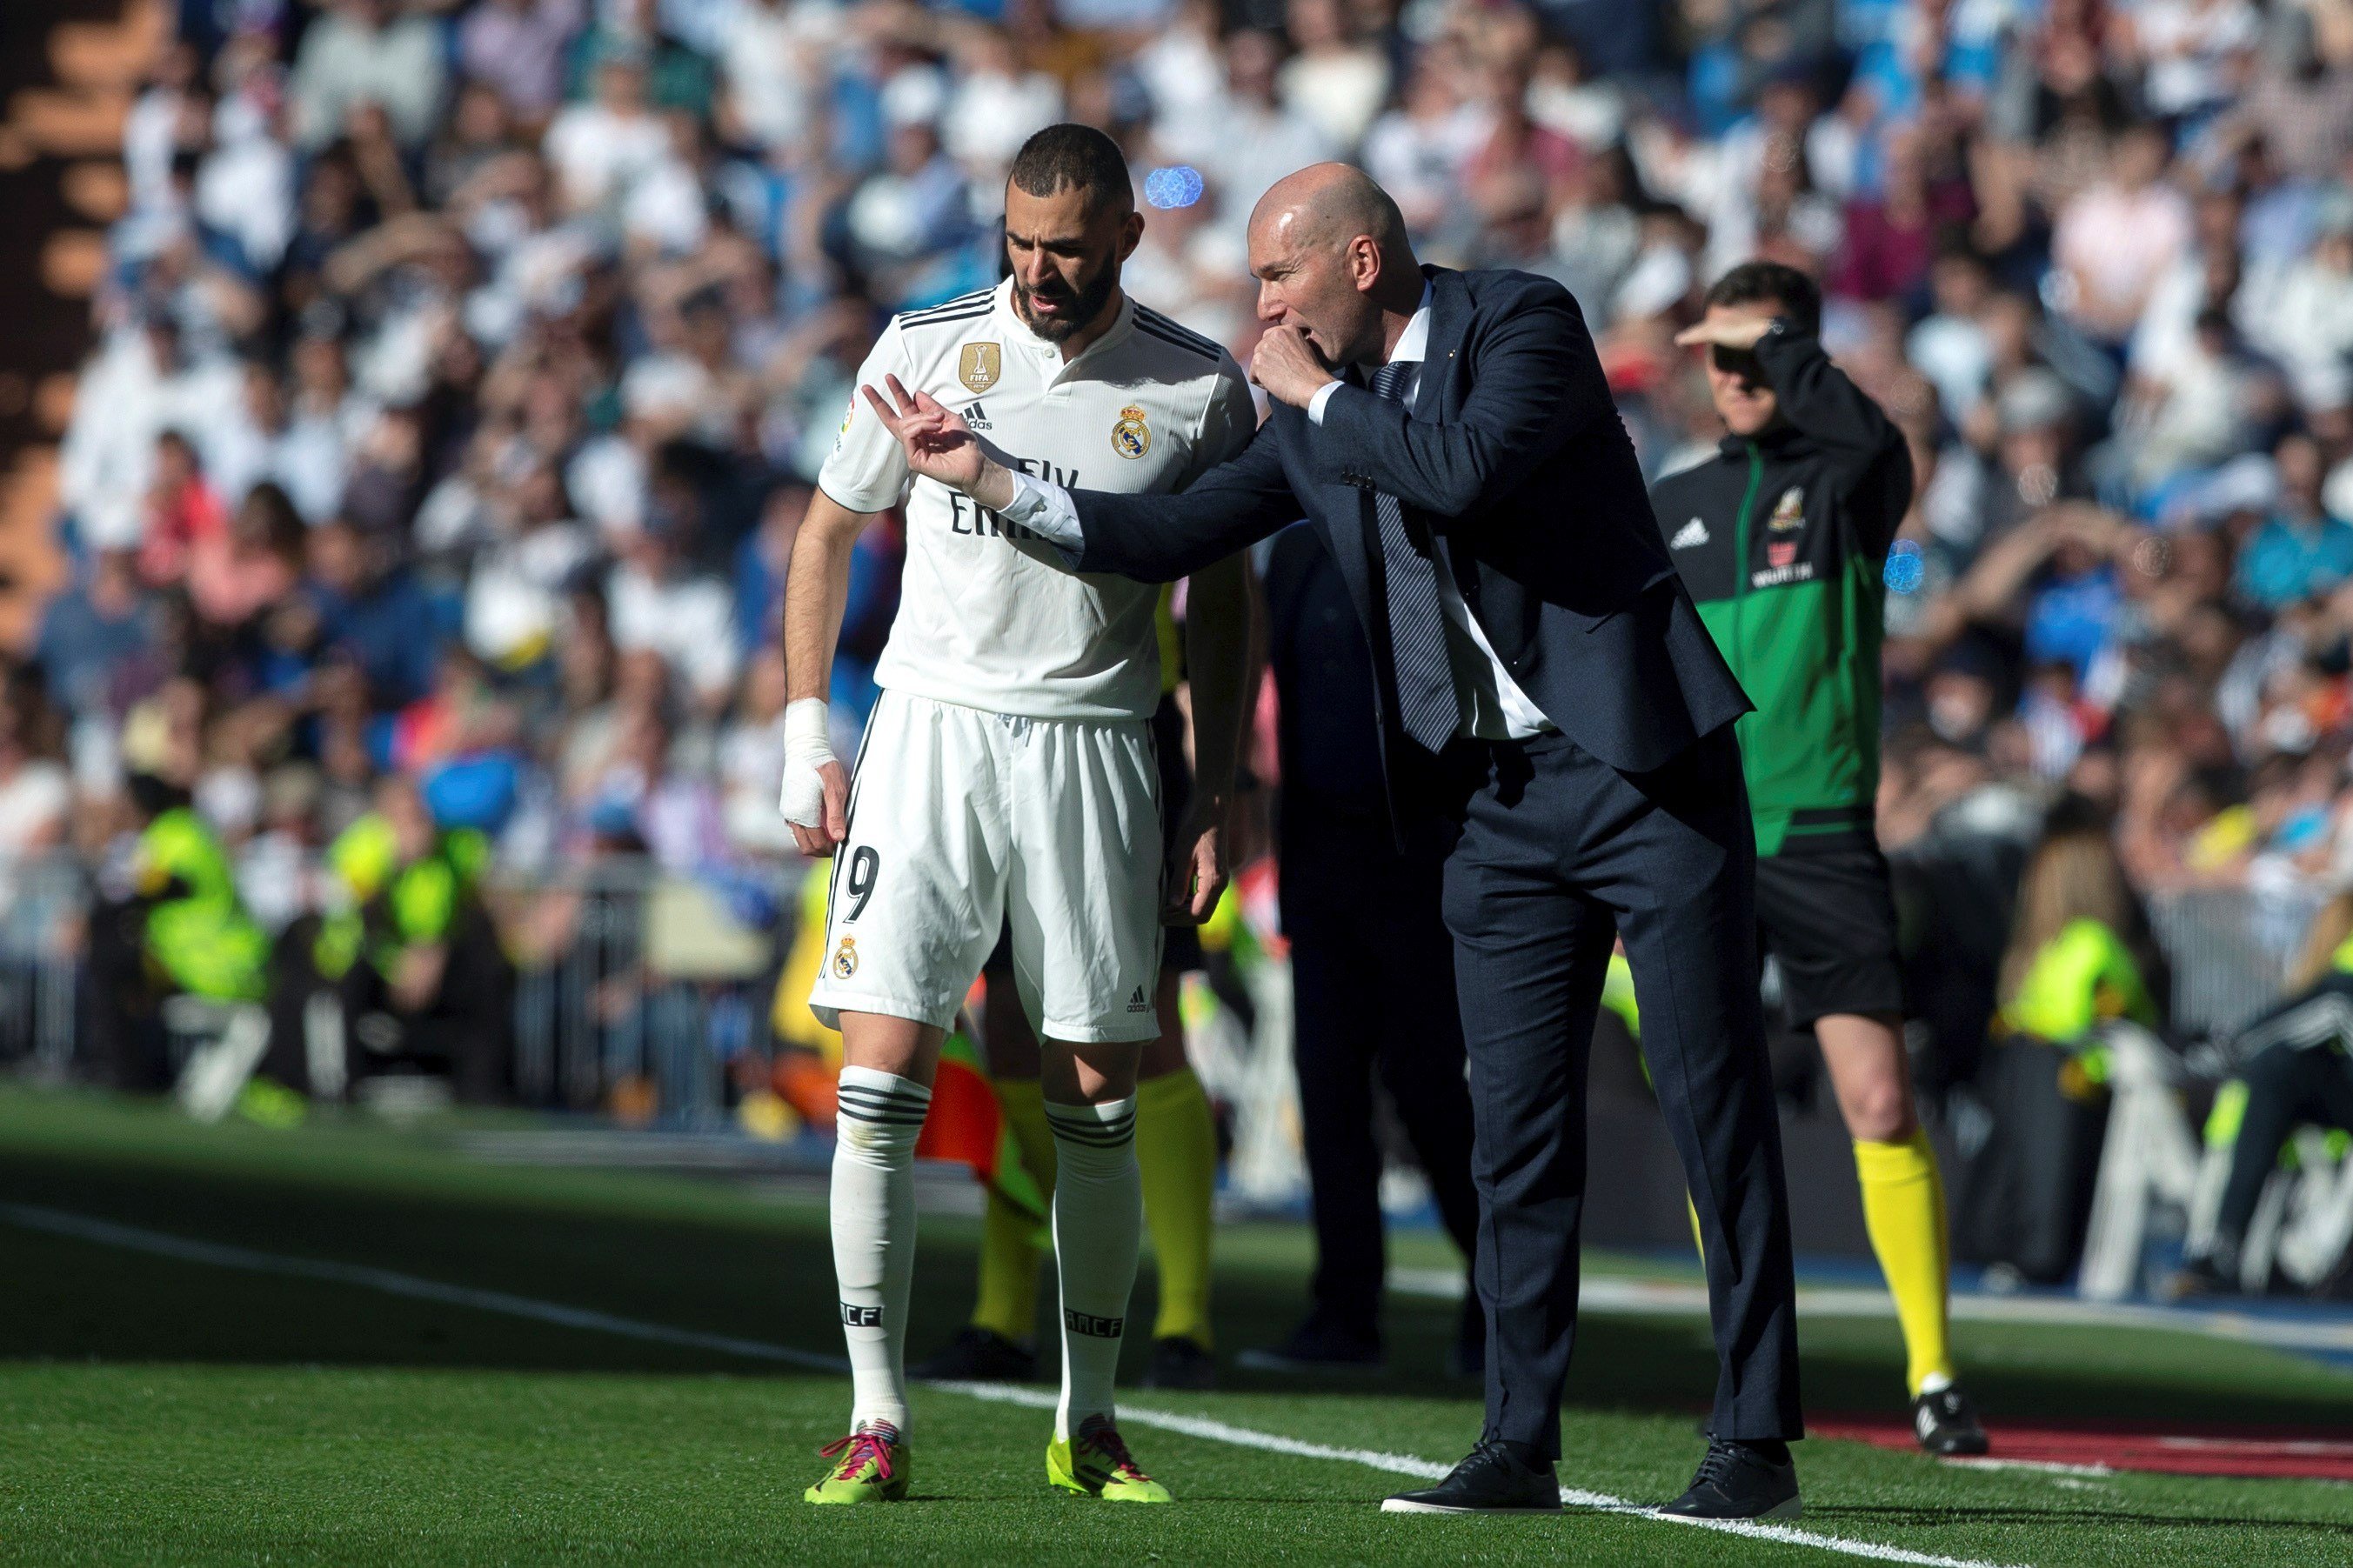 Zidane mai es va atrevir a fer-lo fora, però ara és Benzema qui prohibeix que torni al Reial Madrid